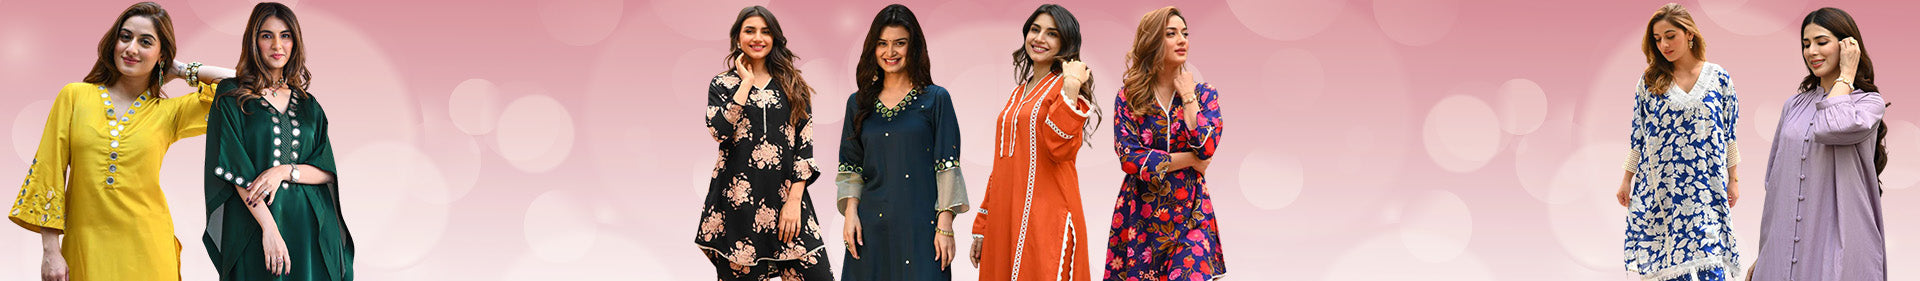 Buy Ethnic Wear for women online at best prices - KesariyaVanity.com